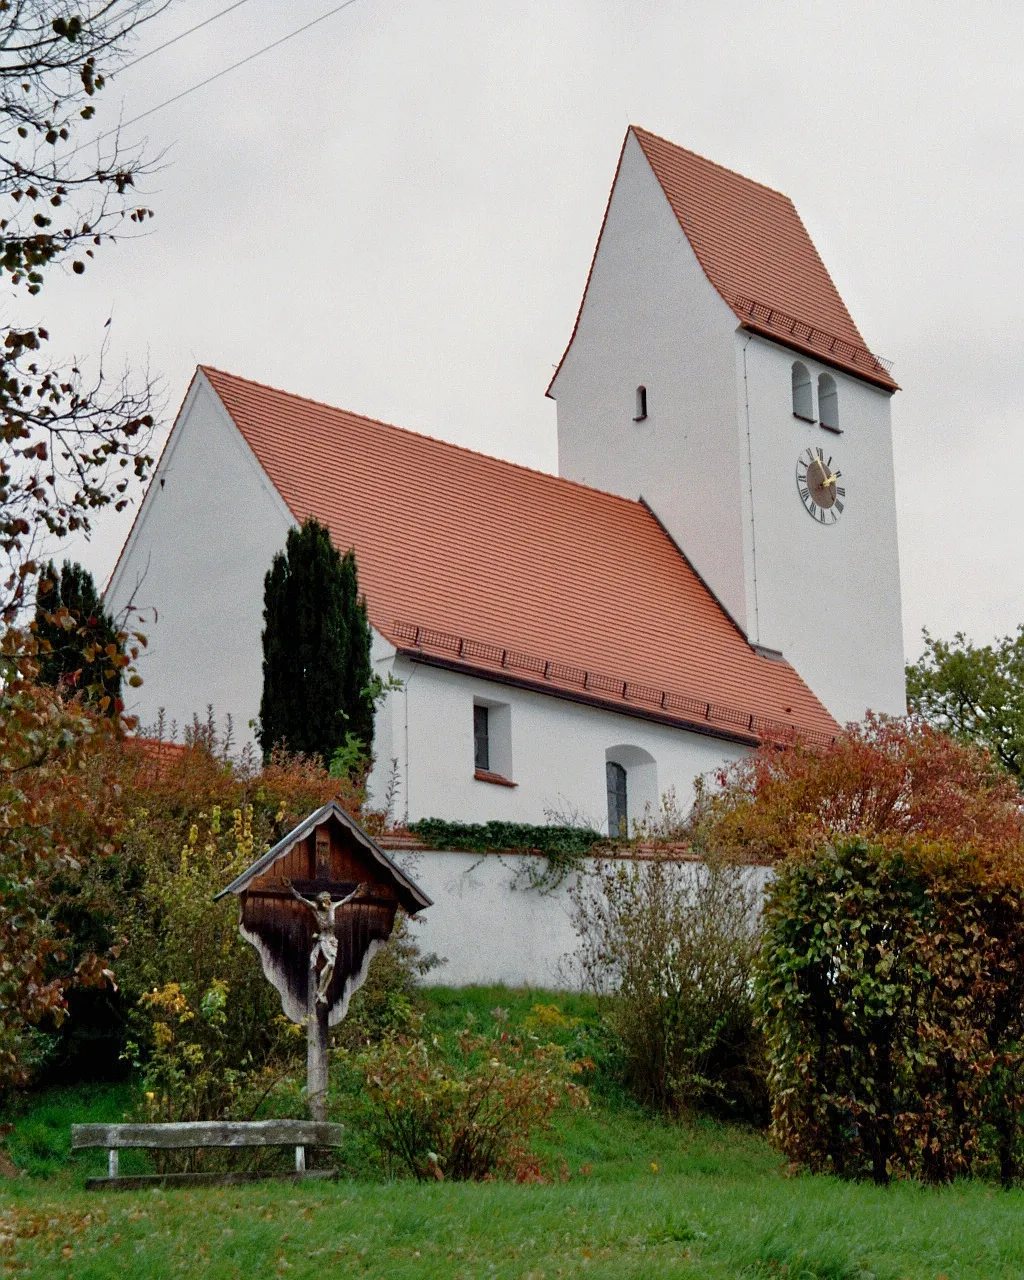 Photo showing: Roman Catholic St John the Baptist (St. Johannes der Täufer) Church in Schönesberg, Ehekirchen, District Neuburg-Schrobenhausen, Bavaria, Germany.